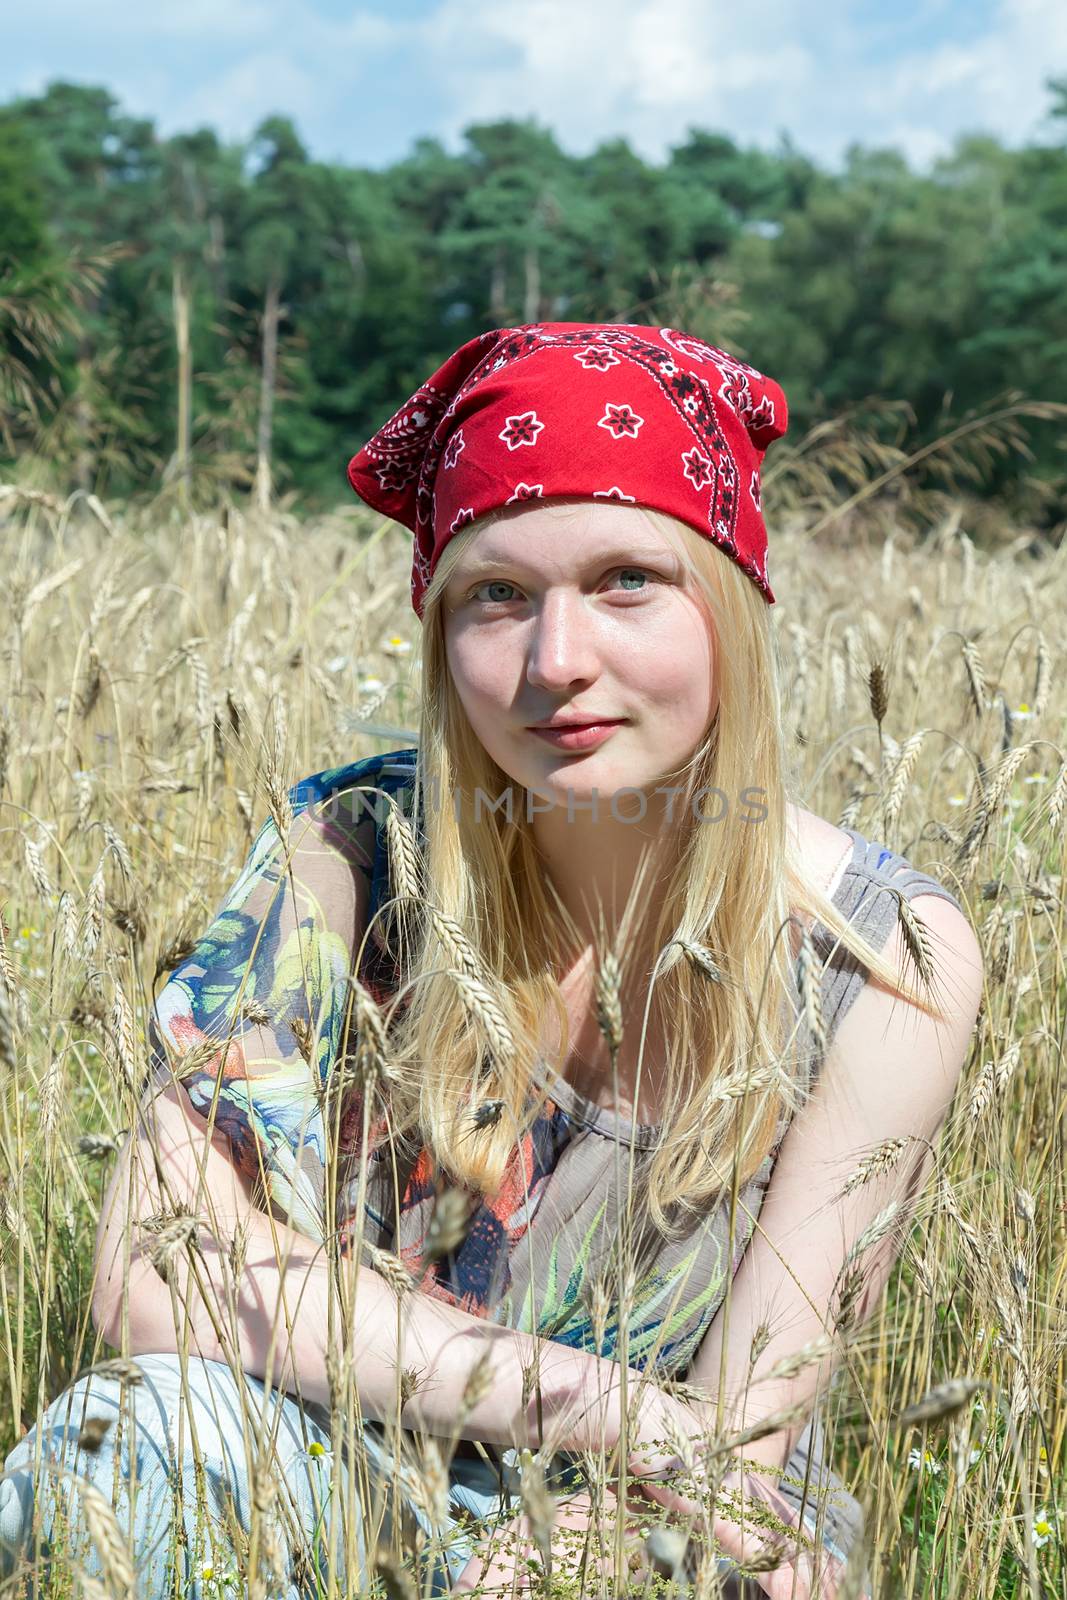 Blonde dutch teenage girl sitting in cornfield by BenSchonewille